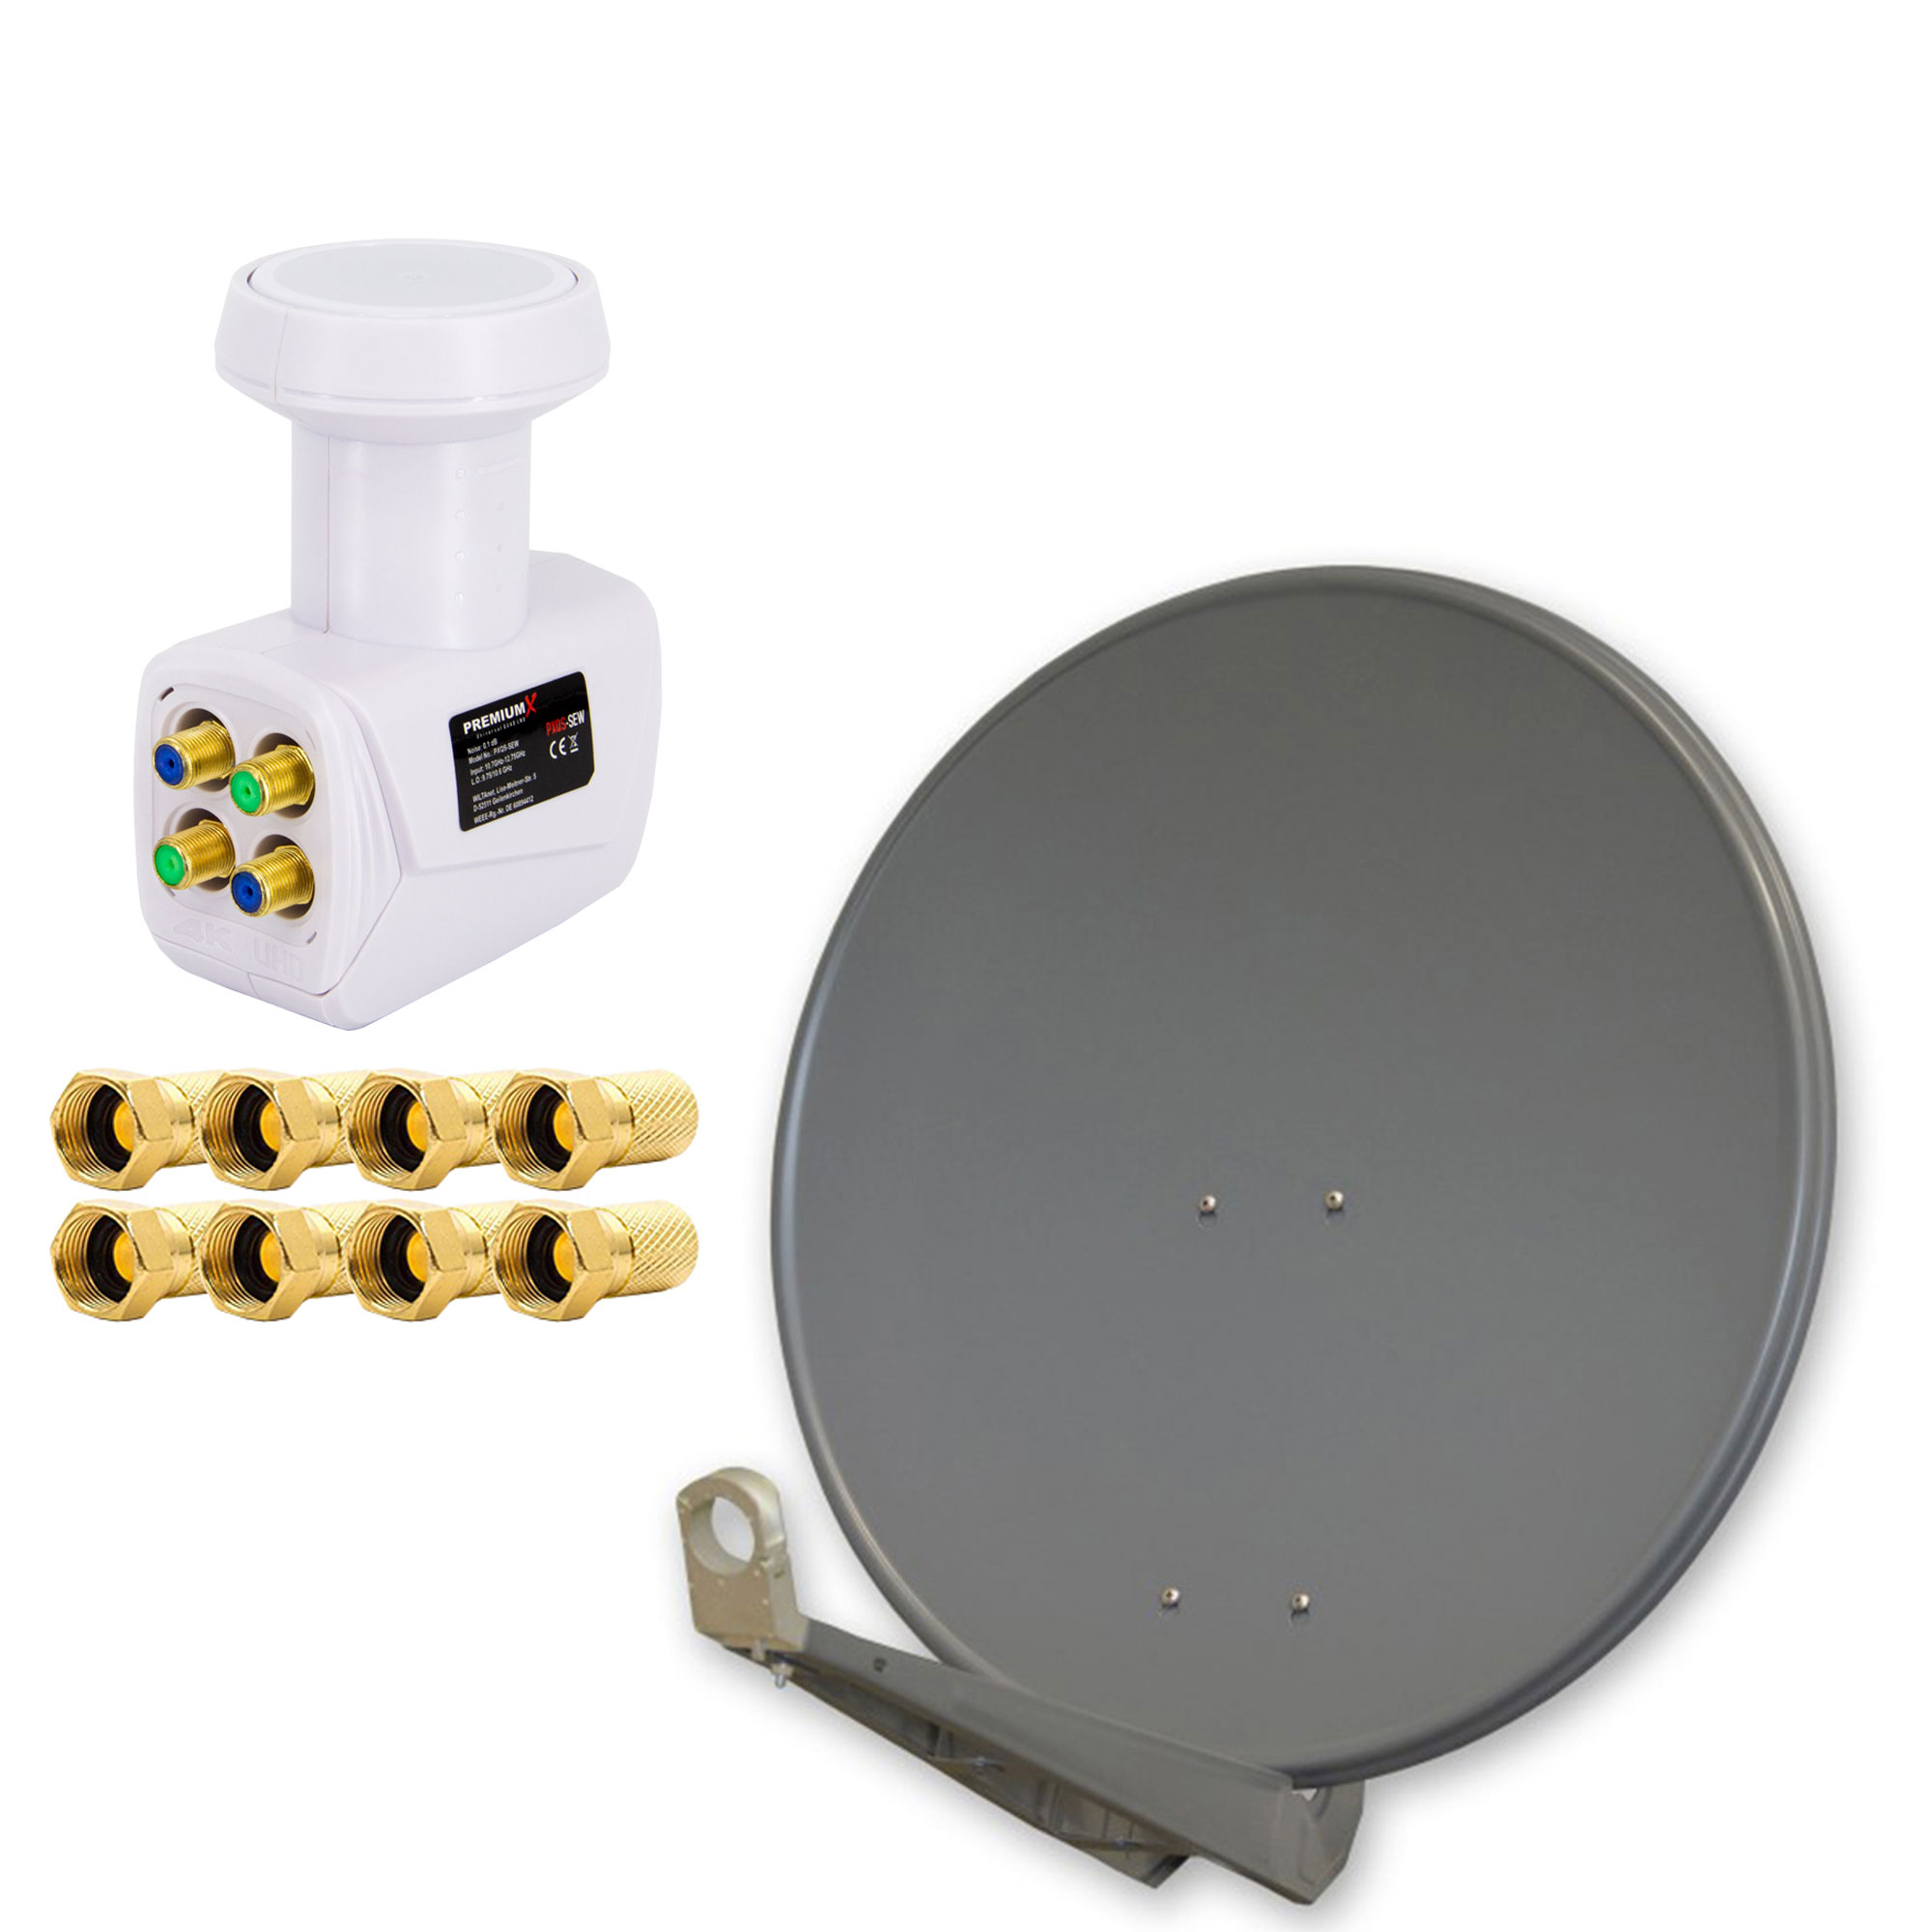 Schüssel Alu 0,1dB F-Stecker Anlage Antenne PREMIUMX Digital Quad Weiß 8x Quad LNB Sat cm, 80cm DELUXE80 PXQS-SE (80 LNB) Anthrazit SAT